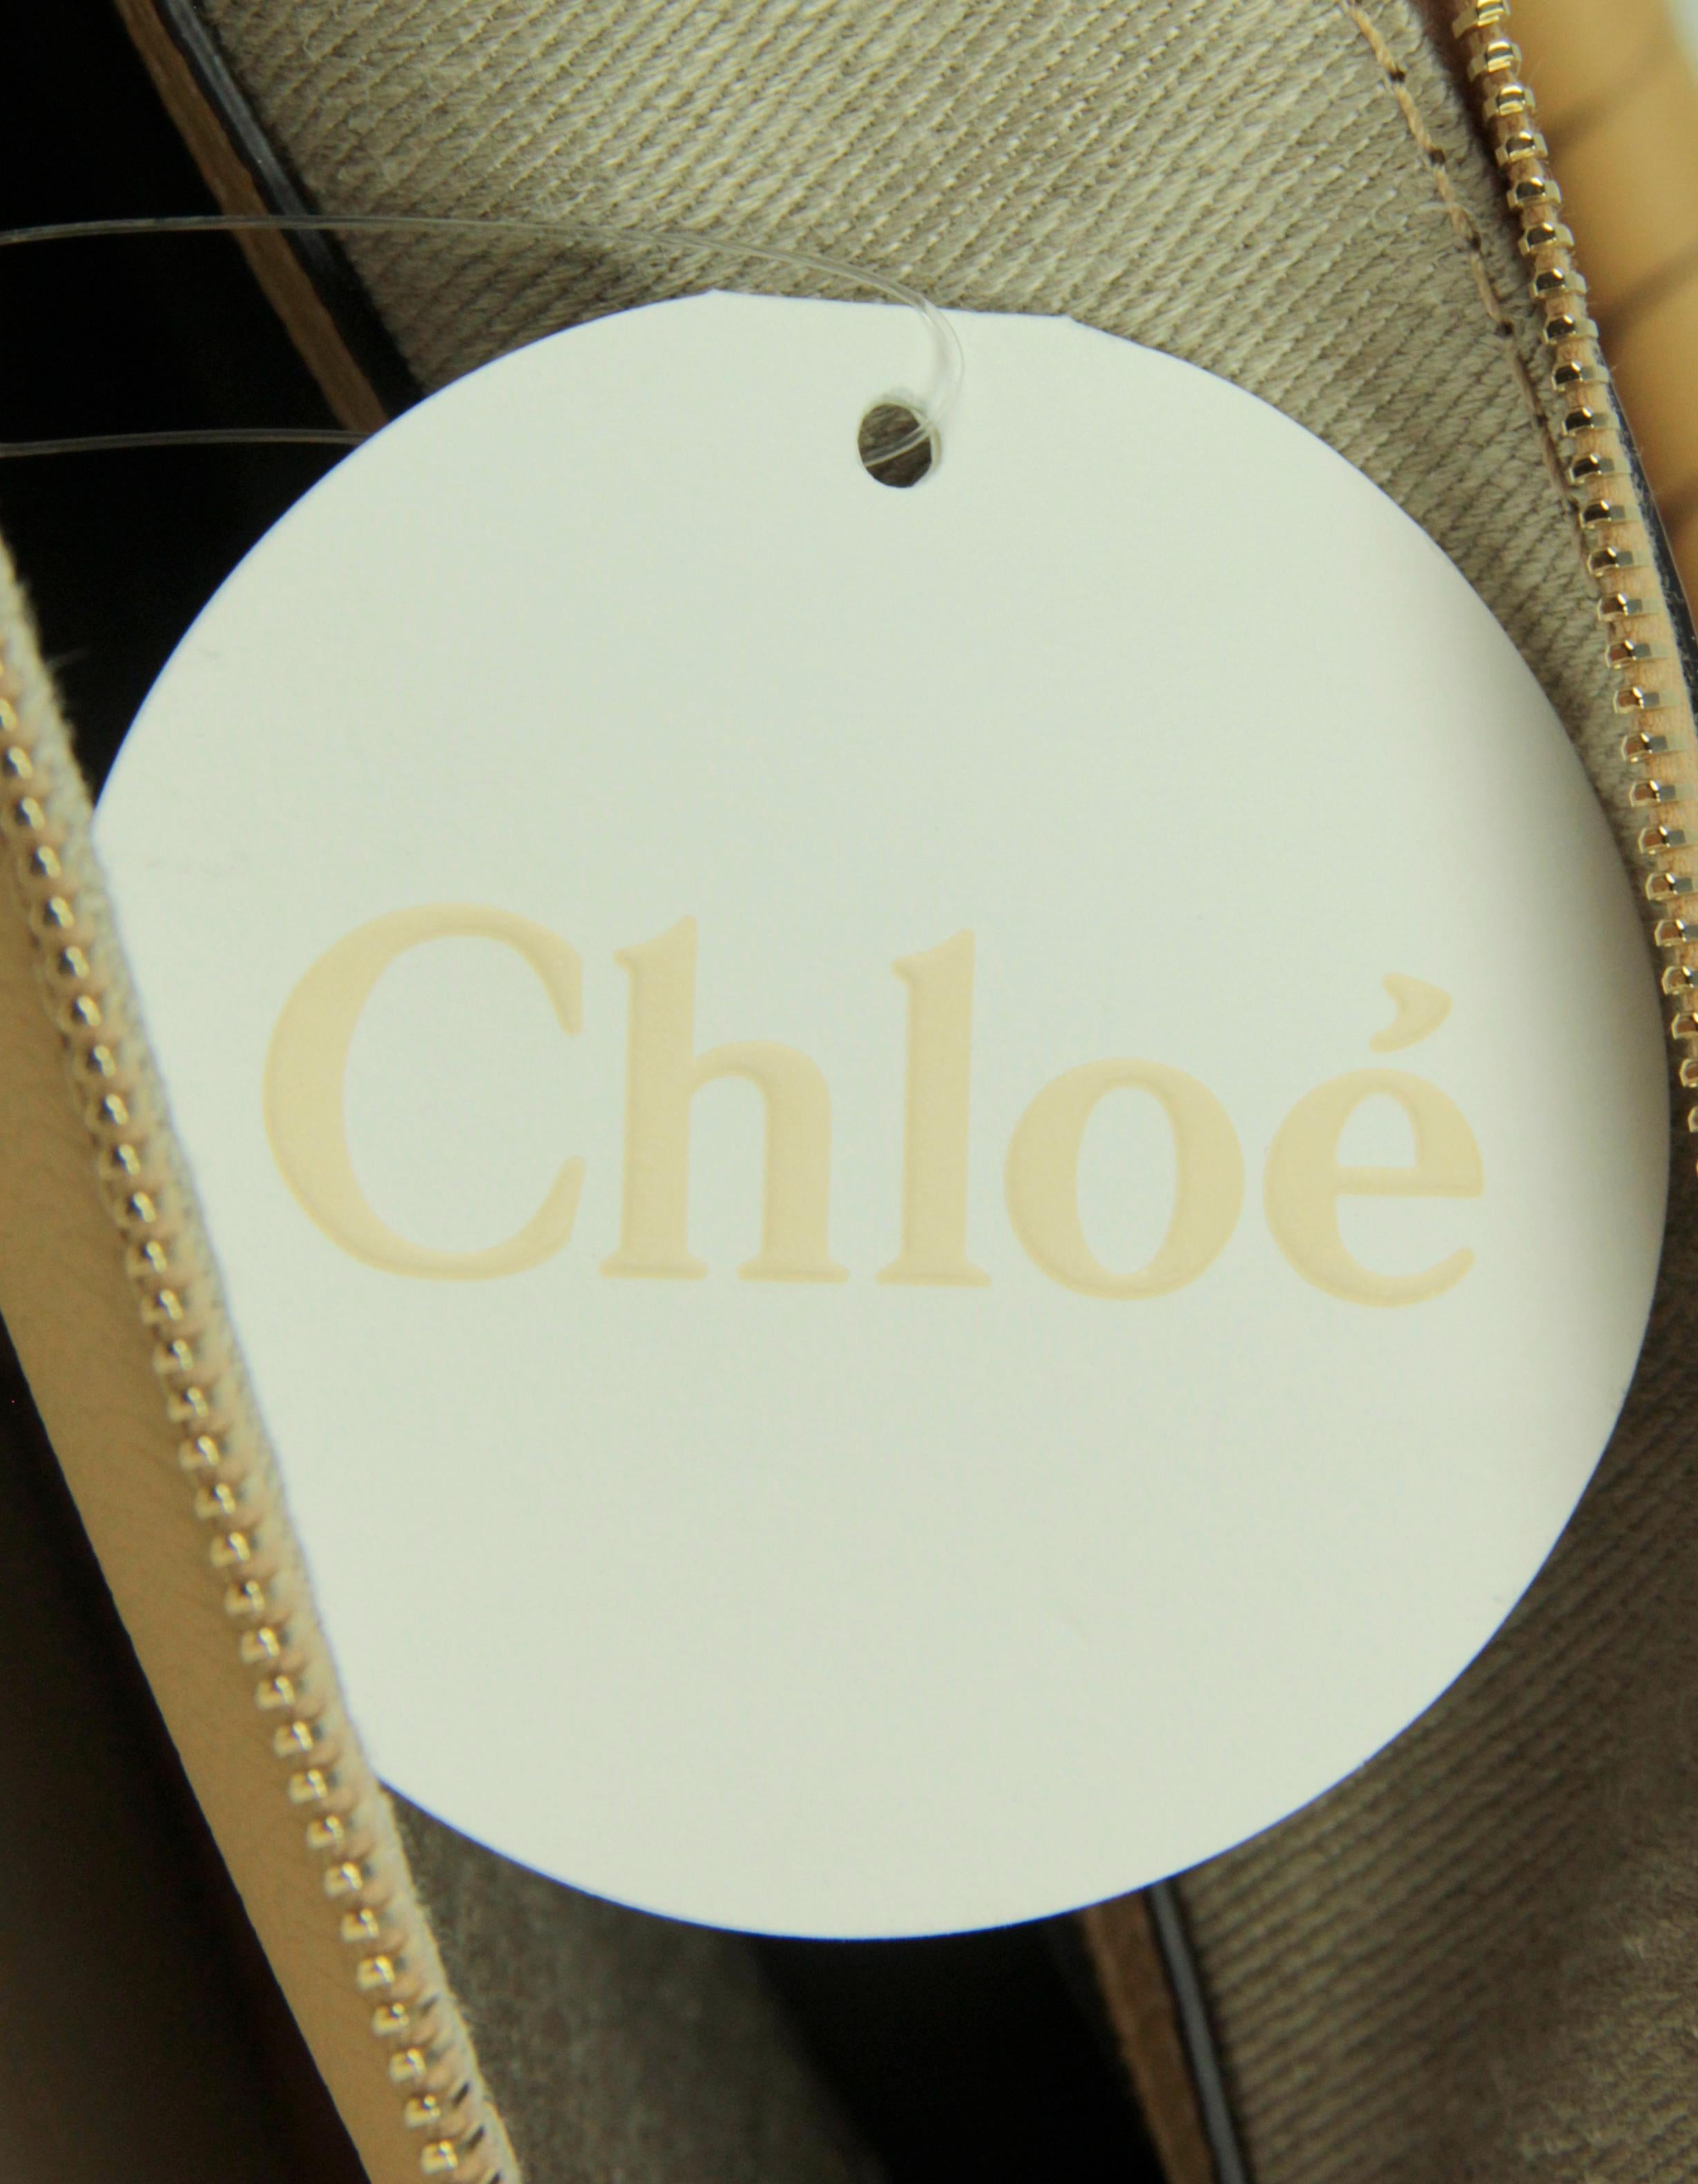 Chloe Soft Tan Leather Medium Marcie Satchel Crossbody Bag 5